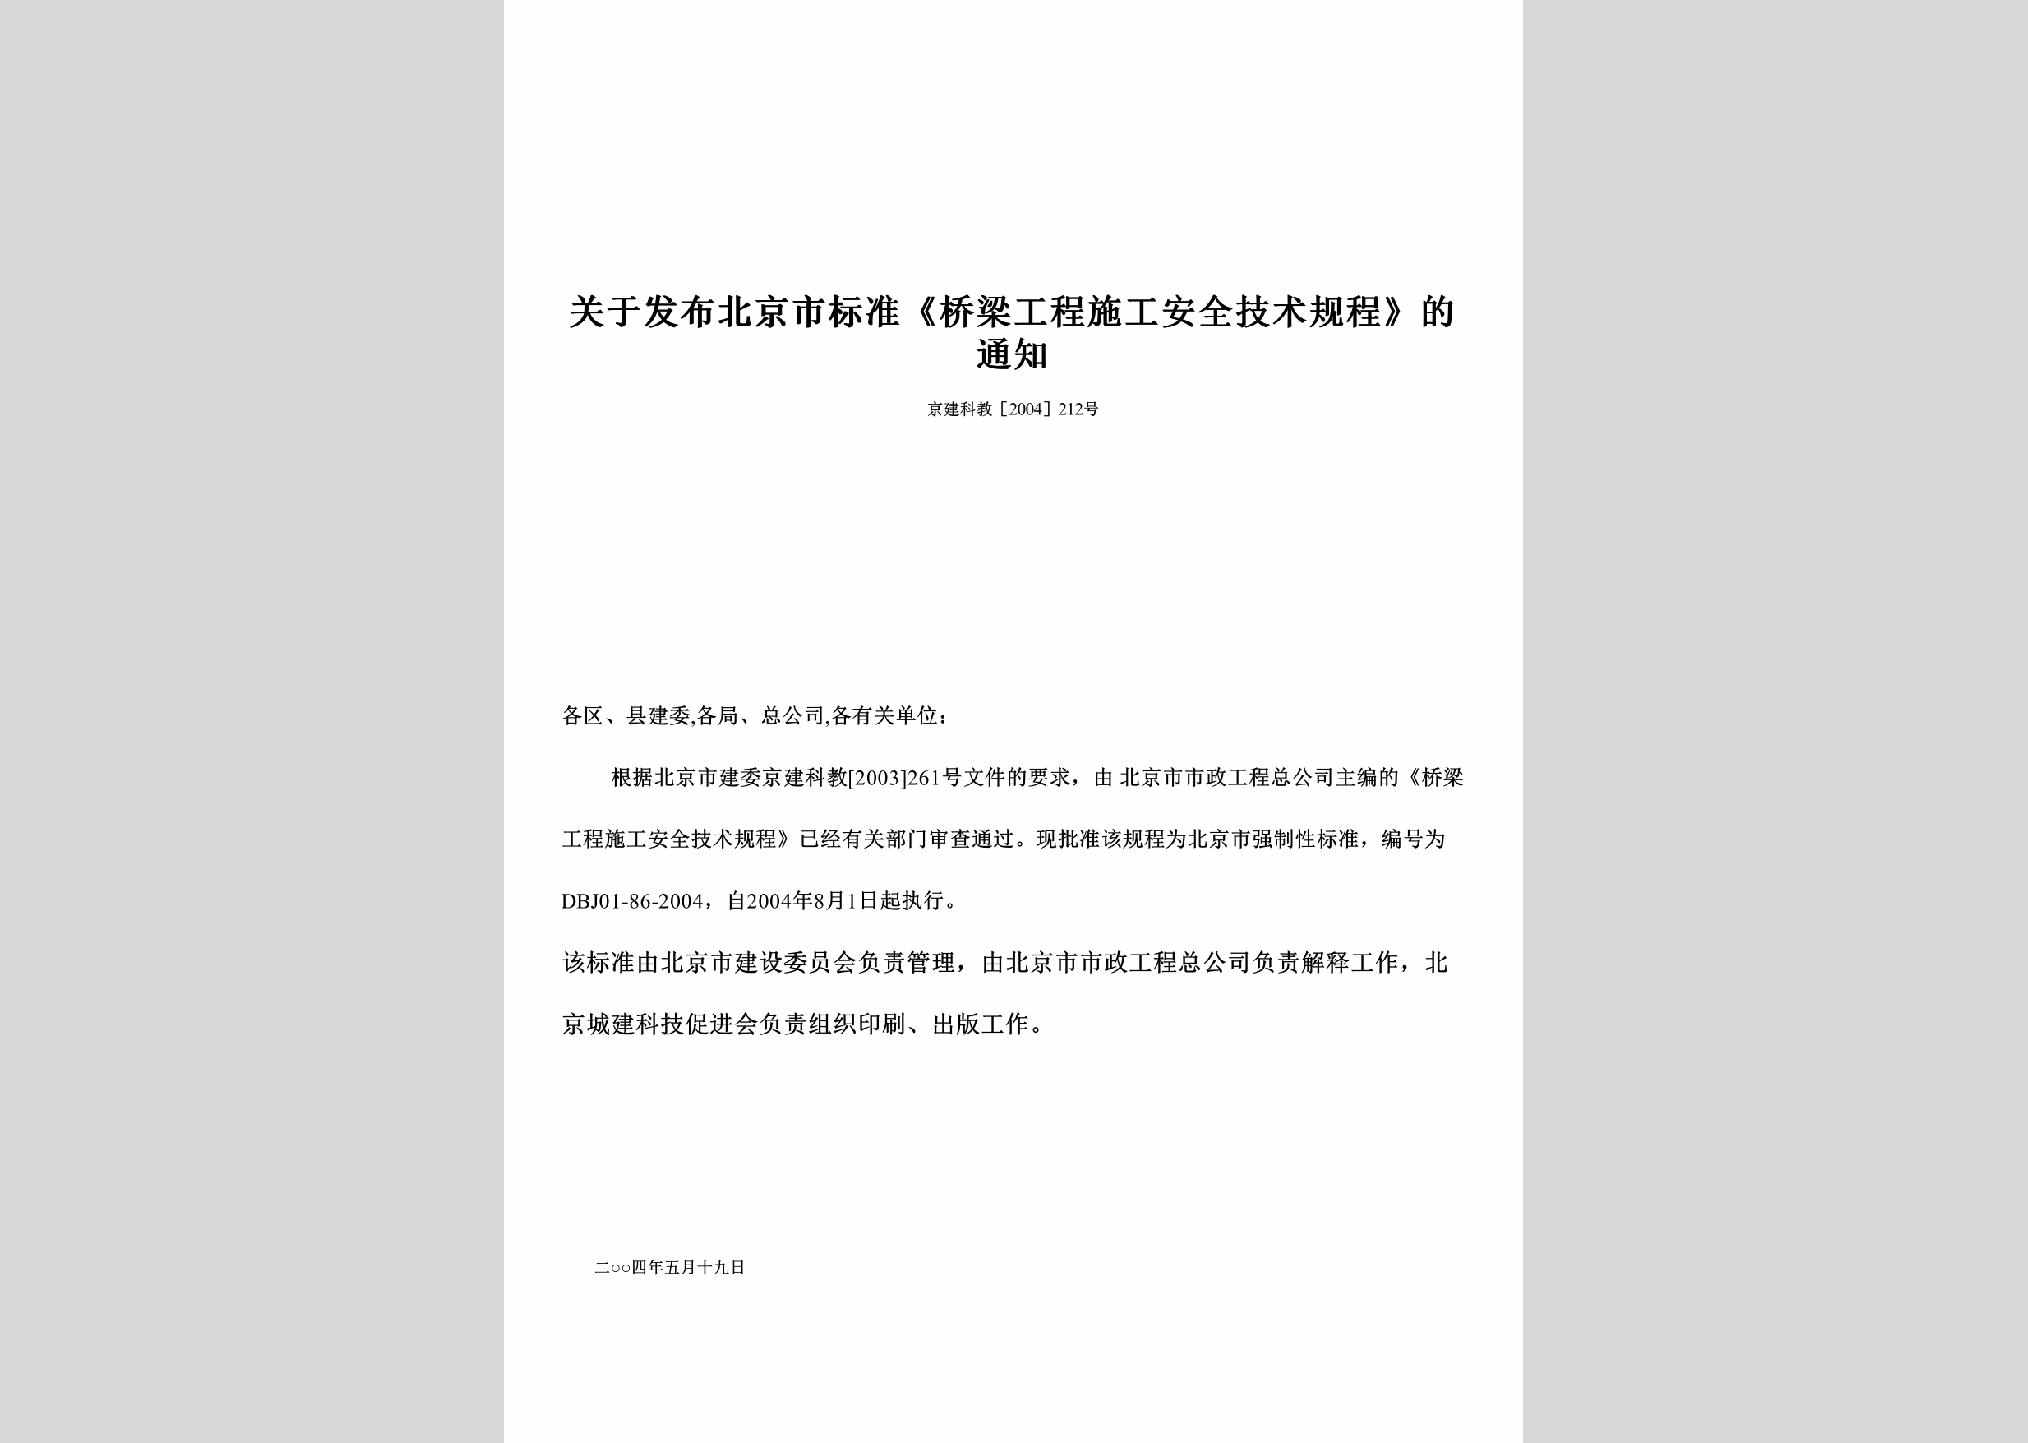 京建科教[2004]212号：关于发布北京市标准《桥梁工程施工安全技术规程》的通知